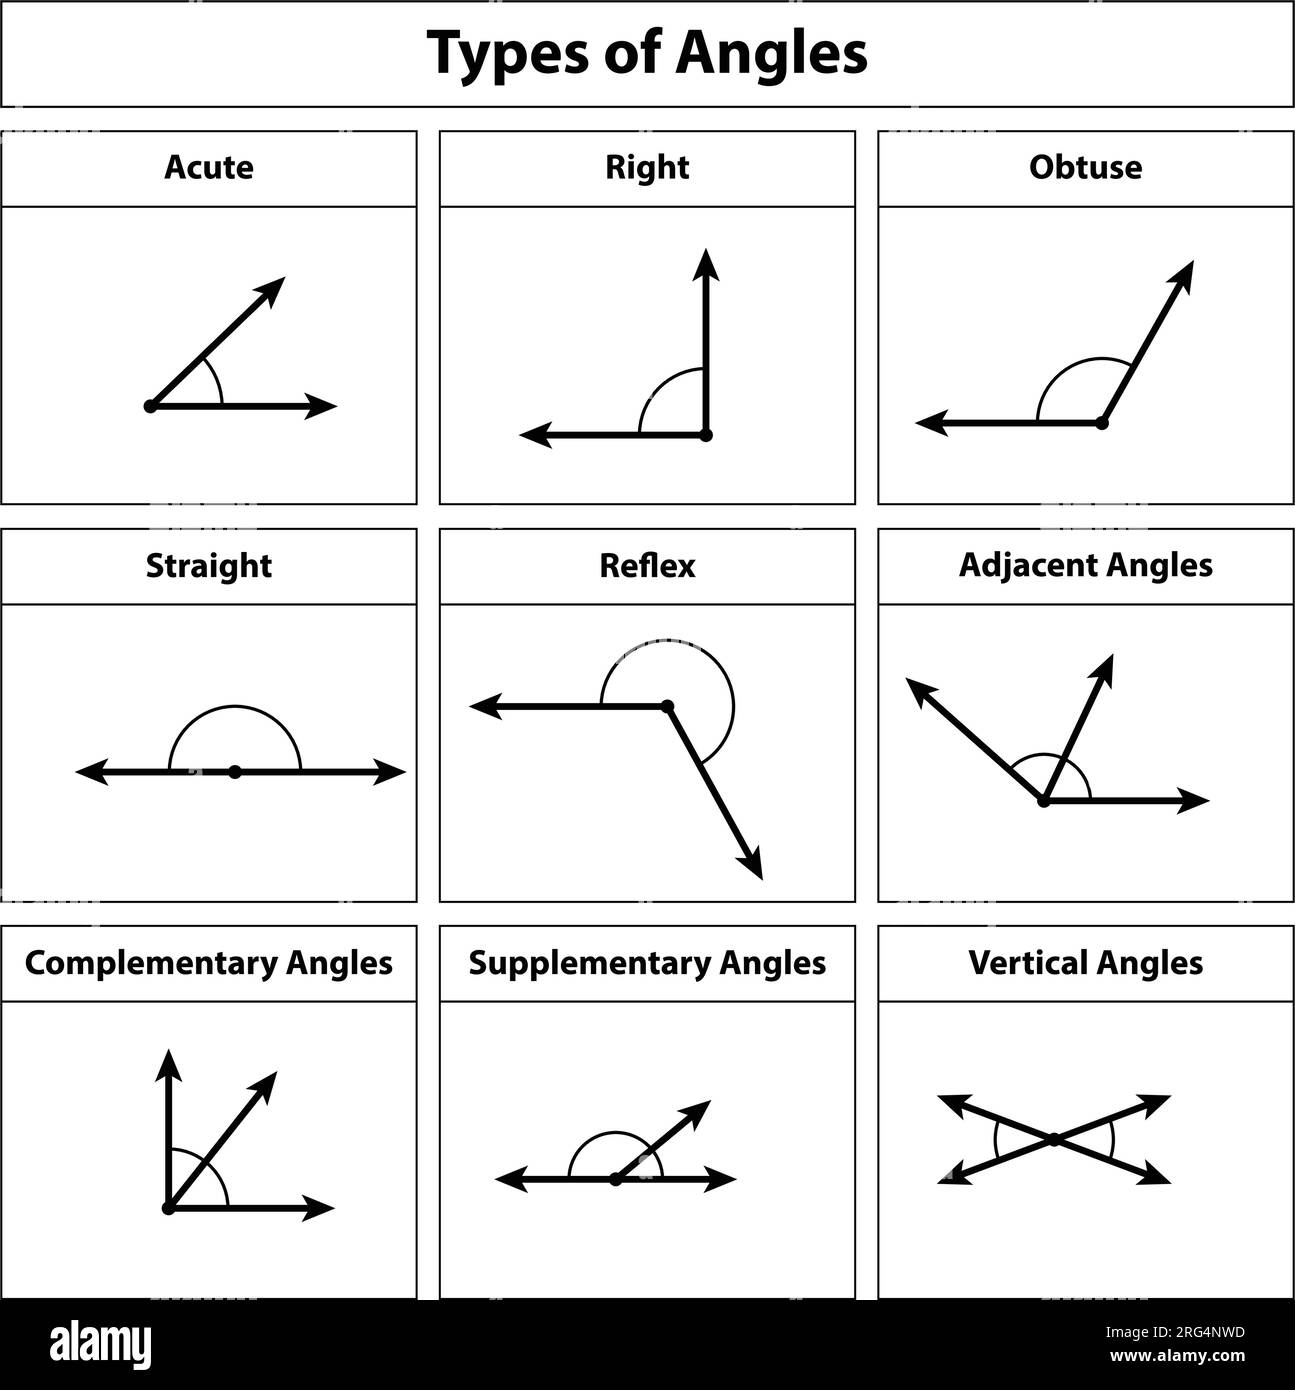 Angles mathematics Banque de photographies et d'images à haute résolution -  Alamy